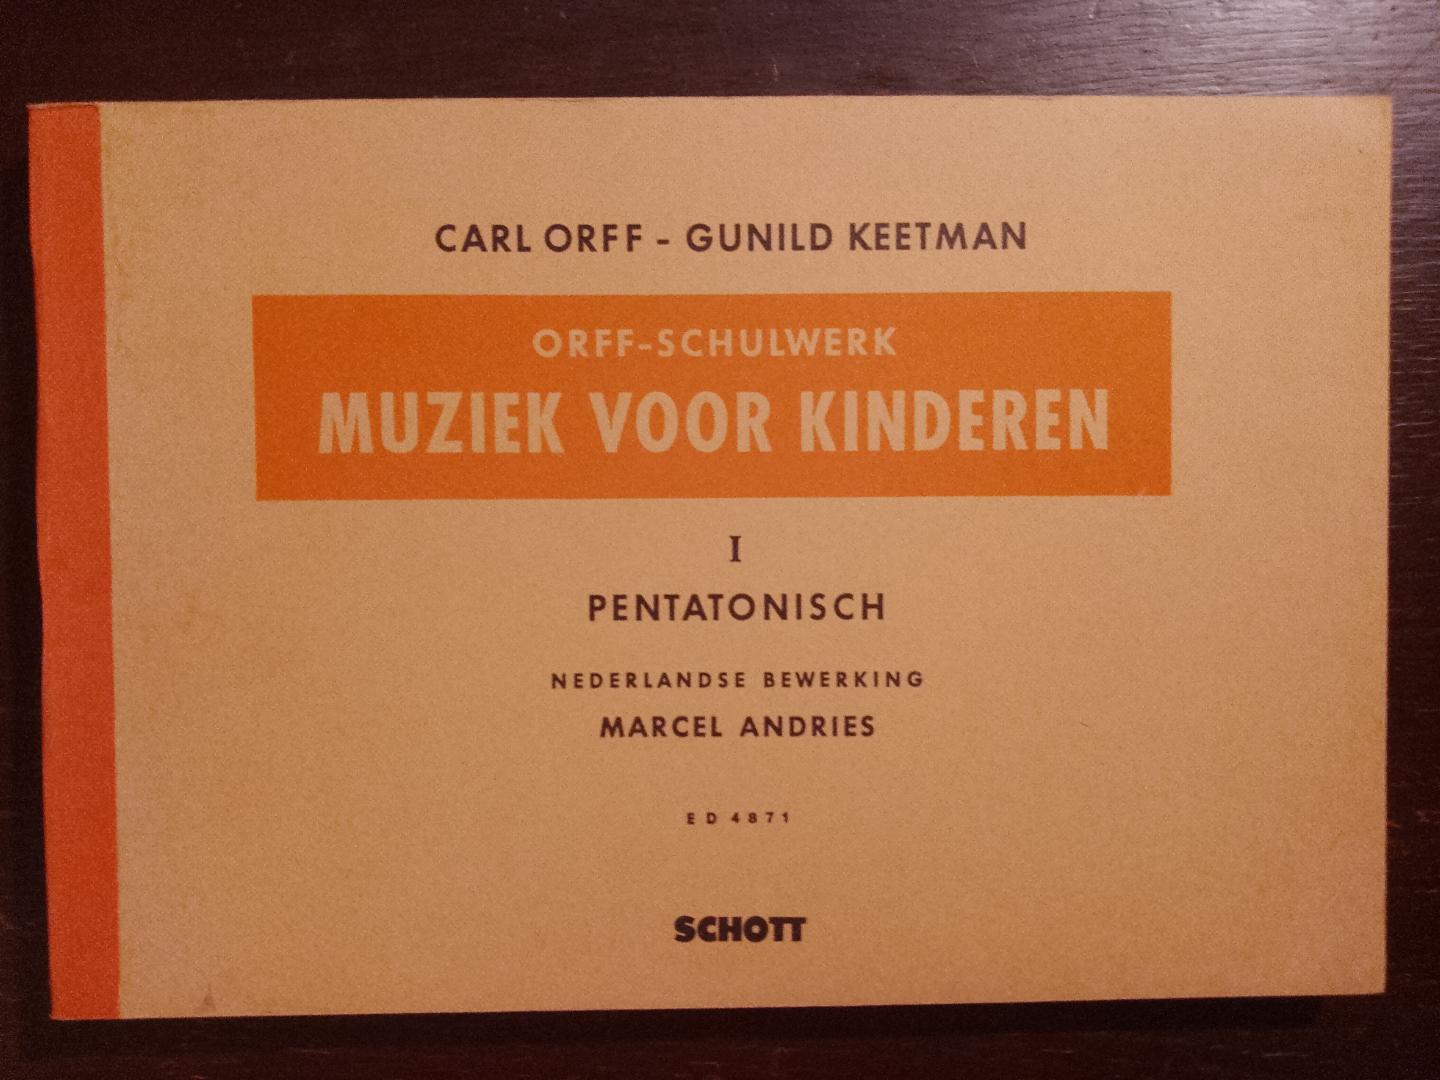 Carl Orff- Gunild Keetman - Orff-Schulwerk Muziek voor kinderen I Pentatonisch